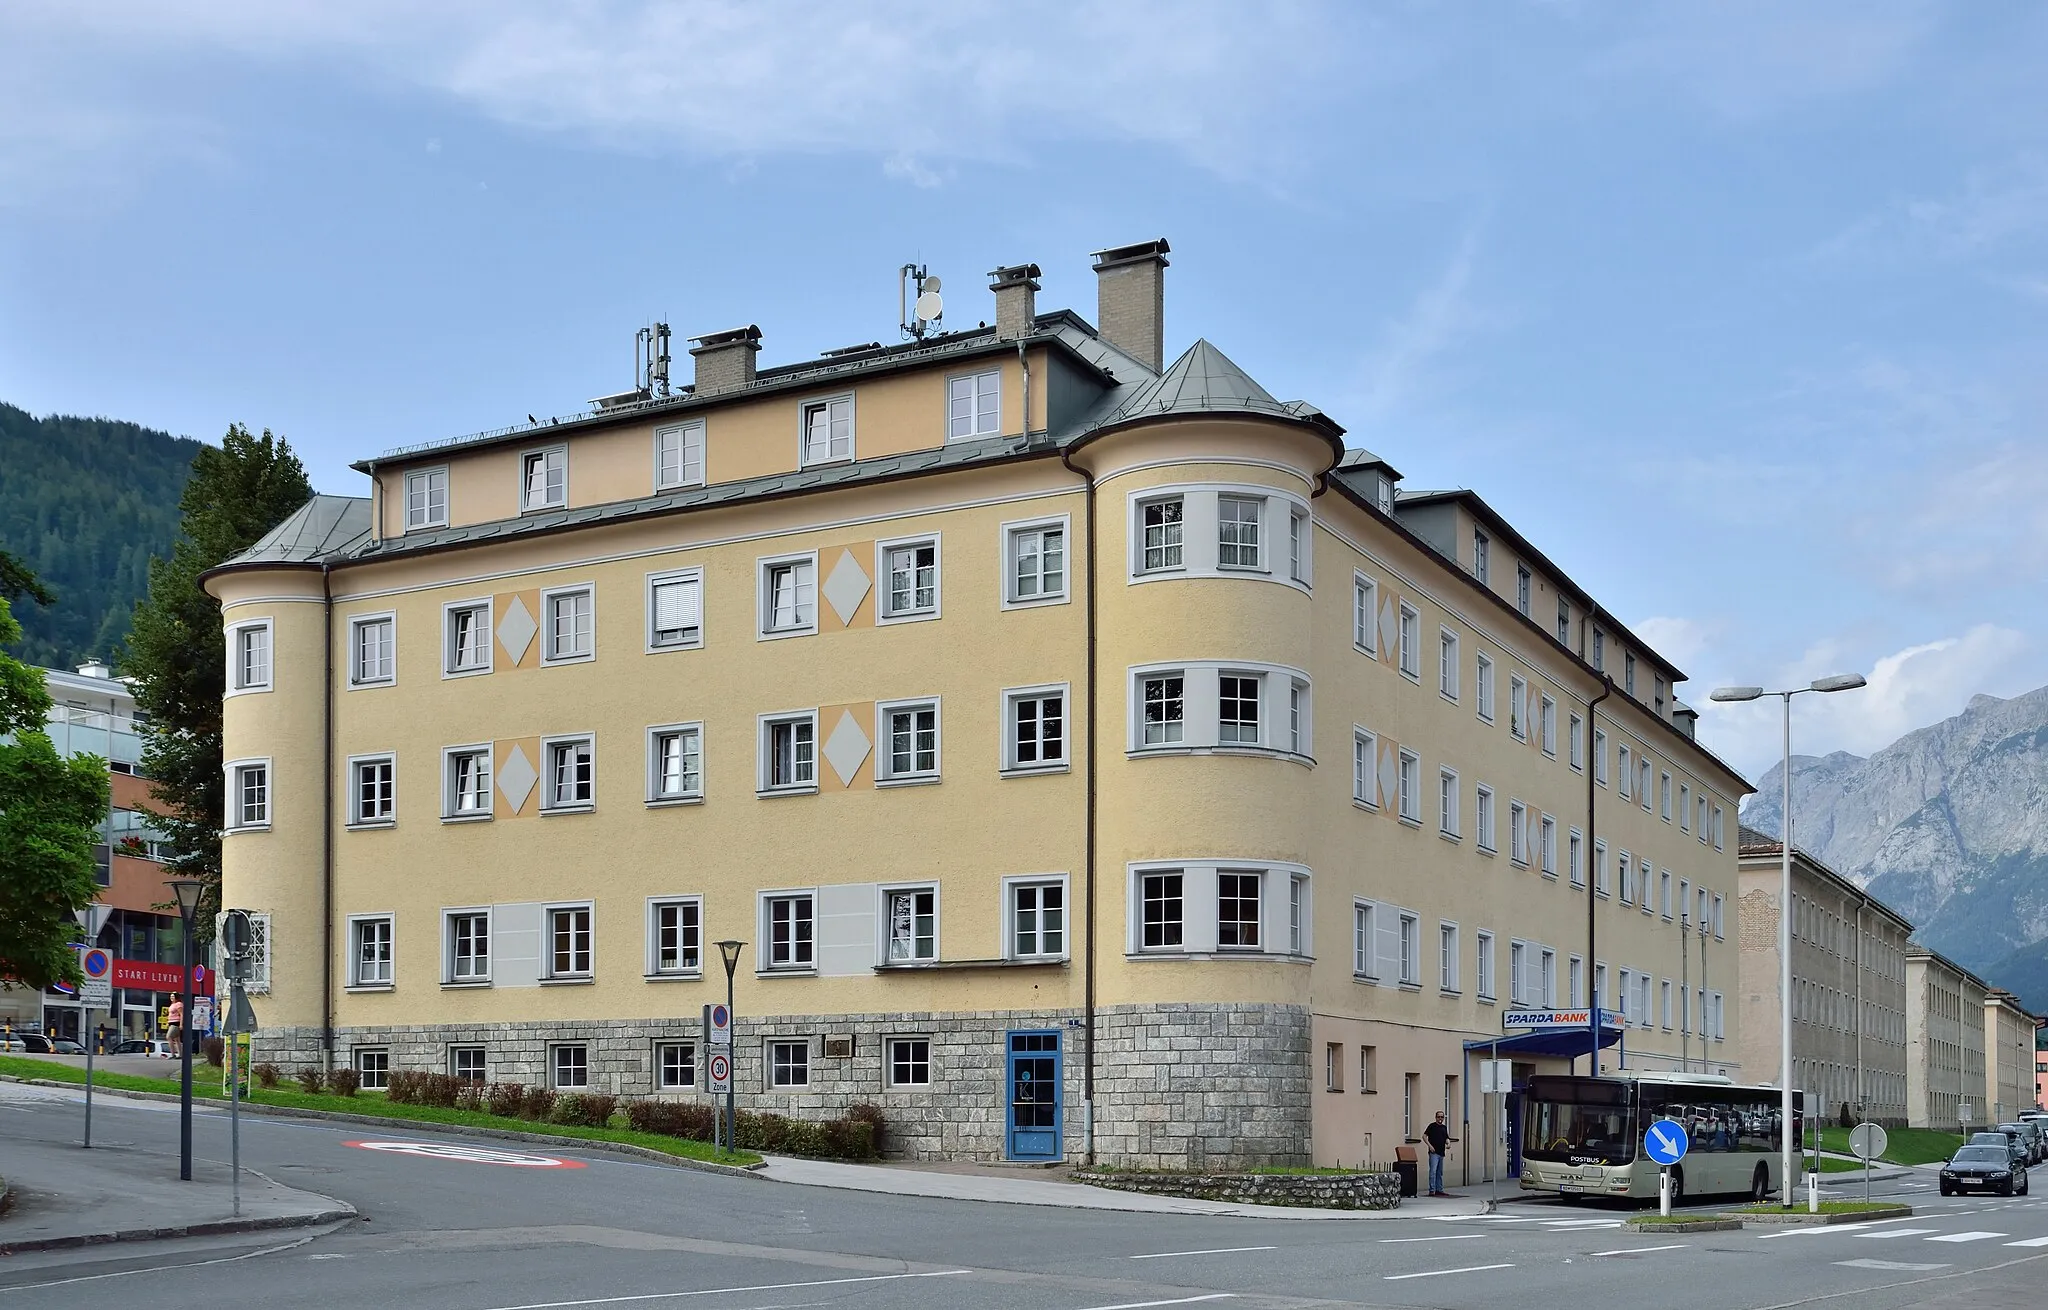 Photo showing: Im Gebäude Bahnhofgasse 1, Bischofshofen, befindet sich eine Filiale der Sparda Bank.